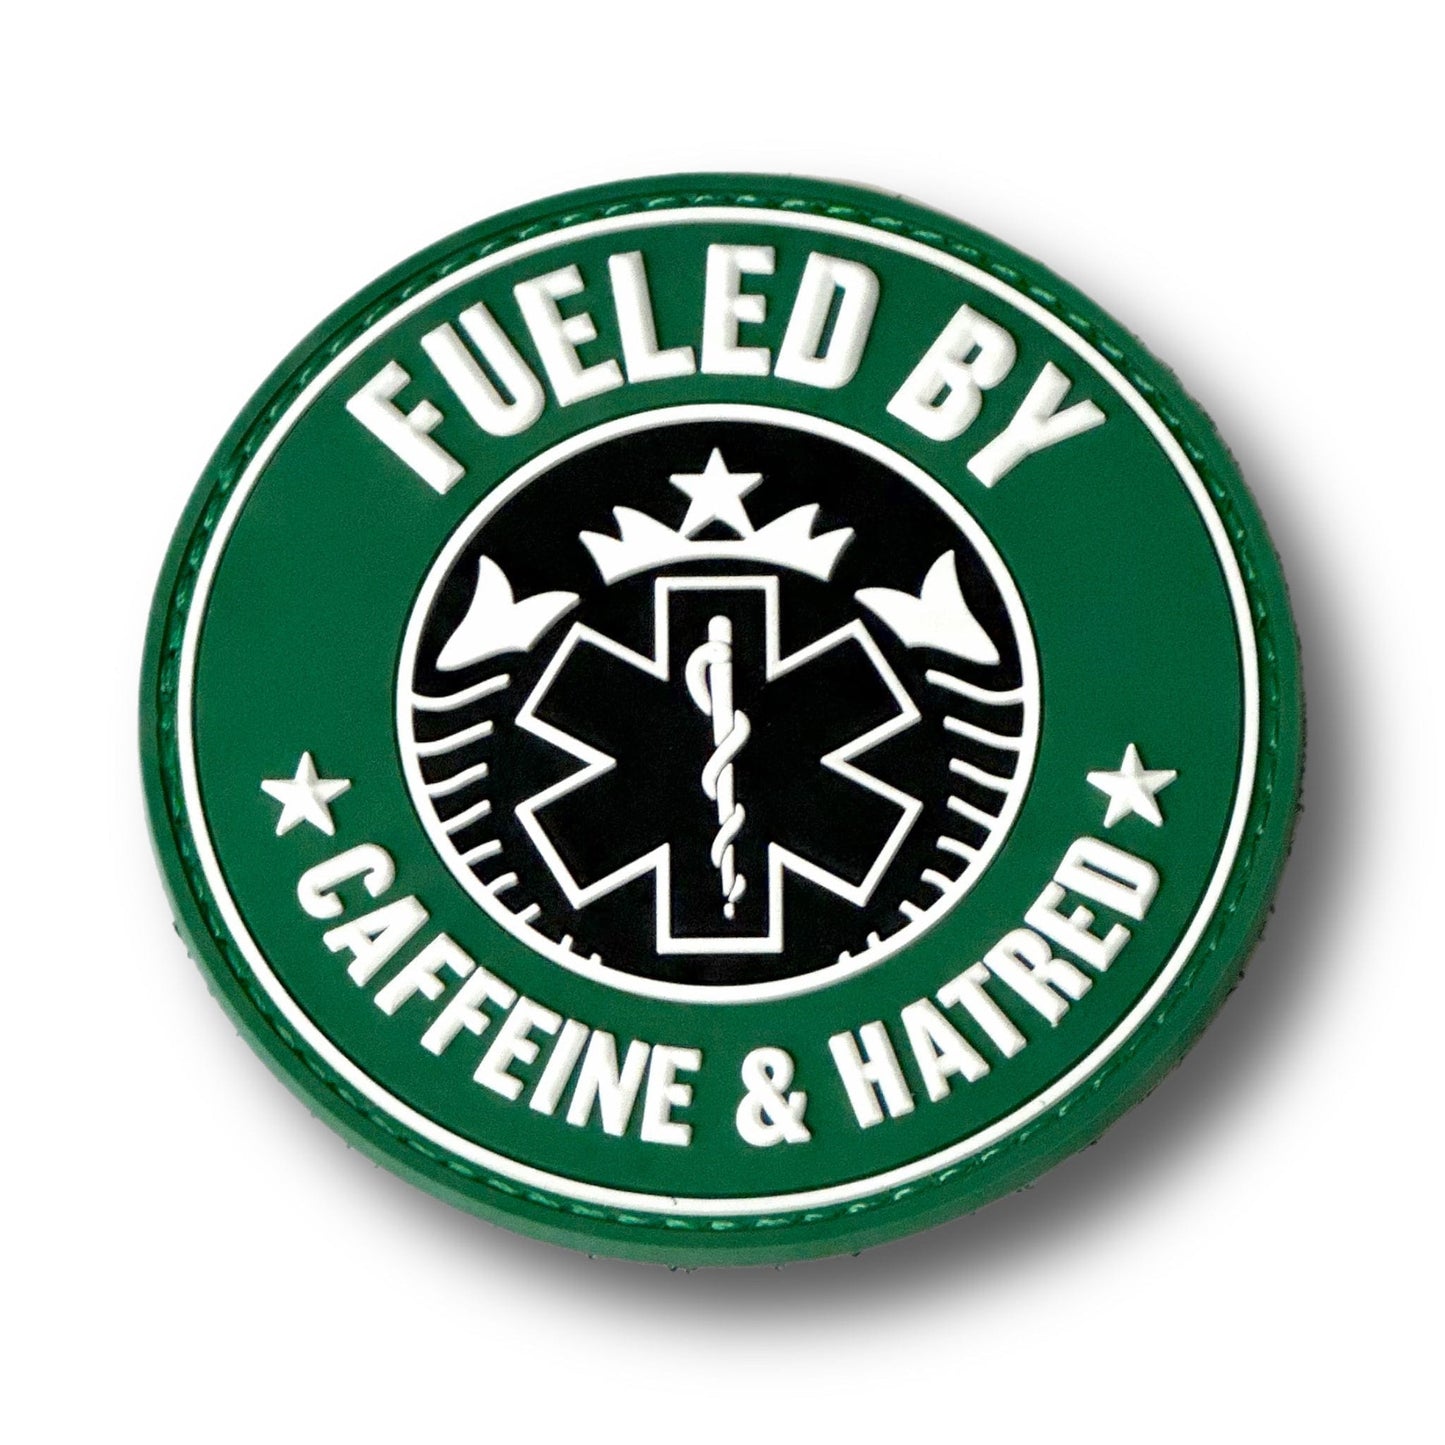 Chief Miller Caffeine & Hatred Patch Apparel